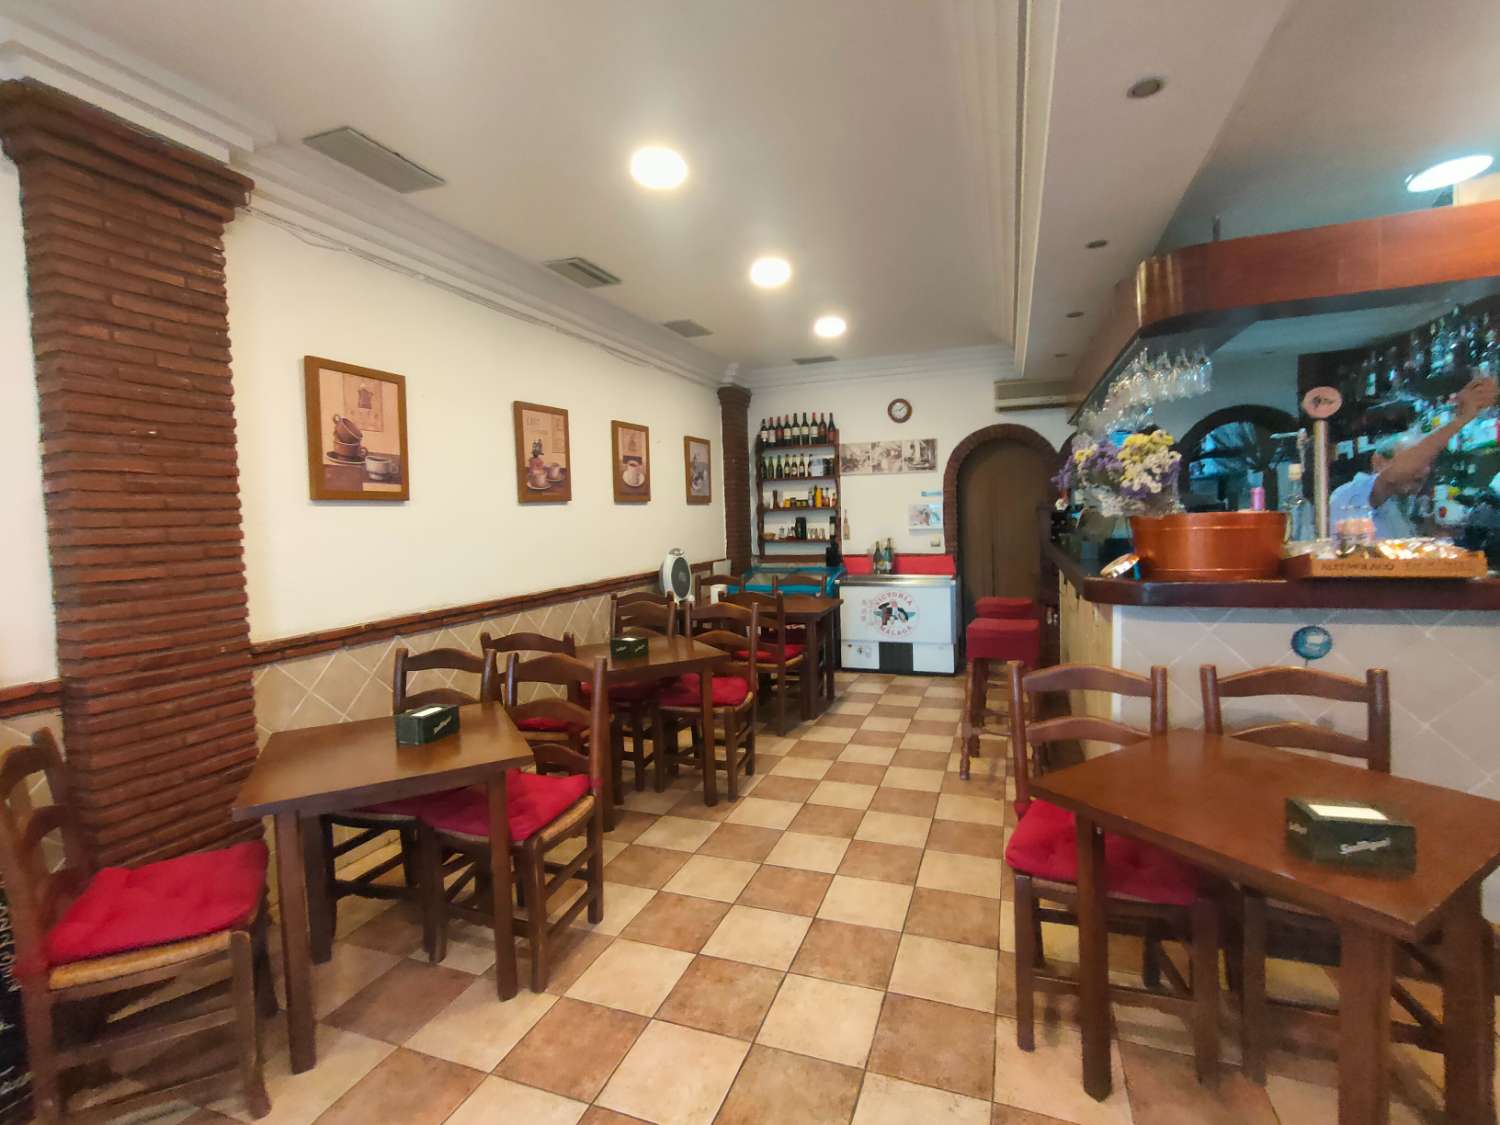 Cafe Bar  Bistrot in vendita a Arroyo de la Miel, Benalmadena Costa del Sol - AREA PRIME